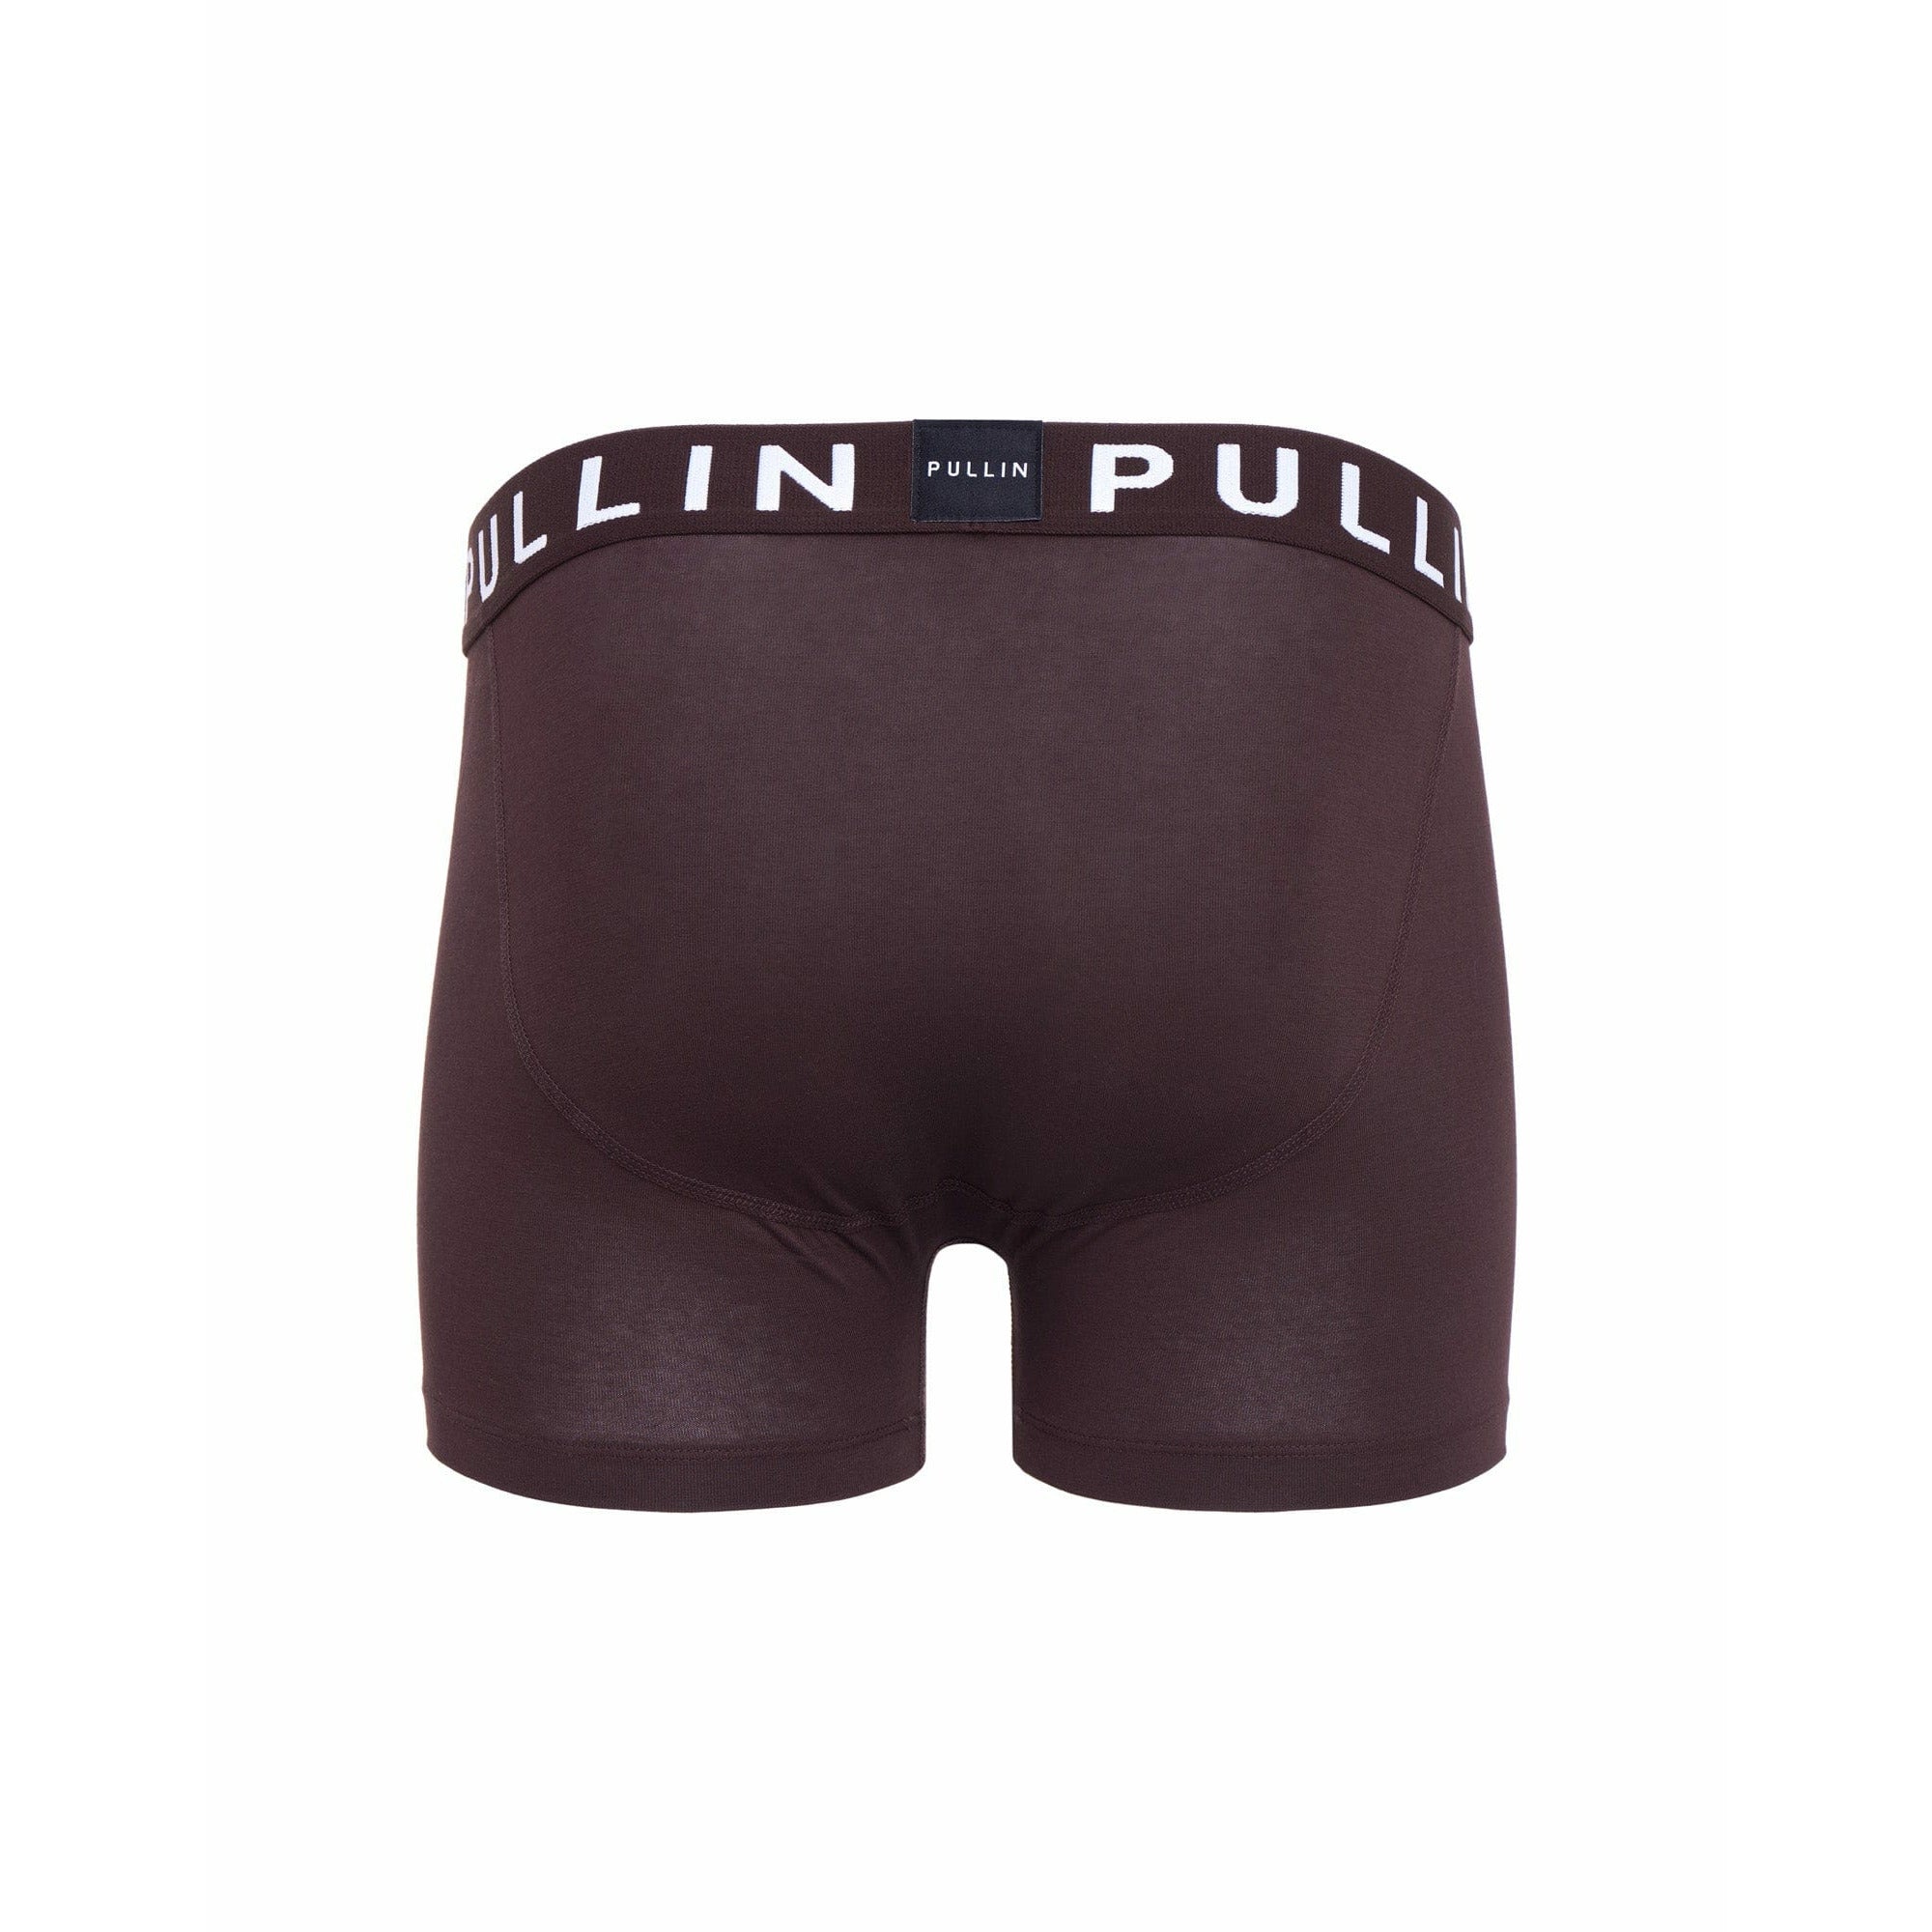 Pullin Master Brown22 Boxer Brief - Underground Clothing